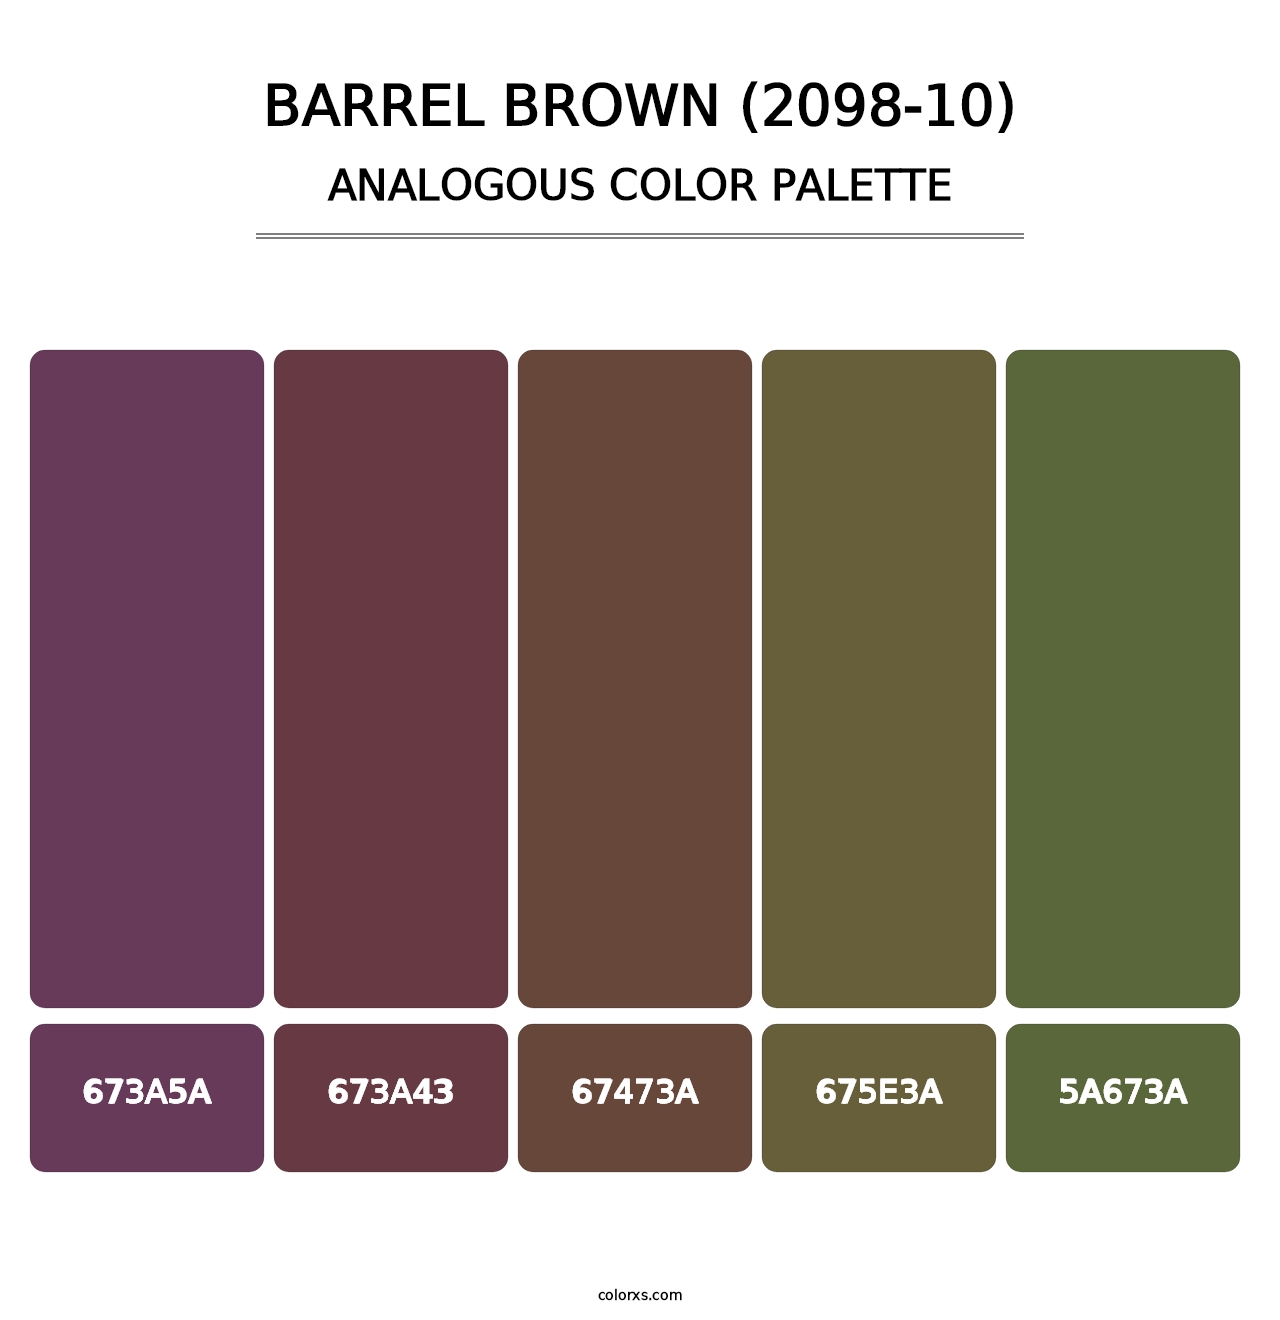 Barrel Brown (2098-10) - Analogous Color Palette